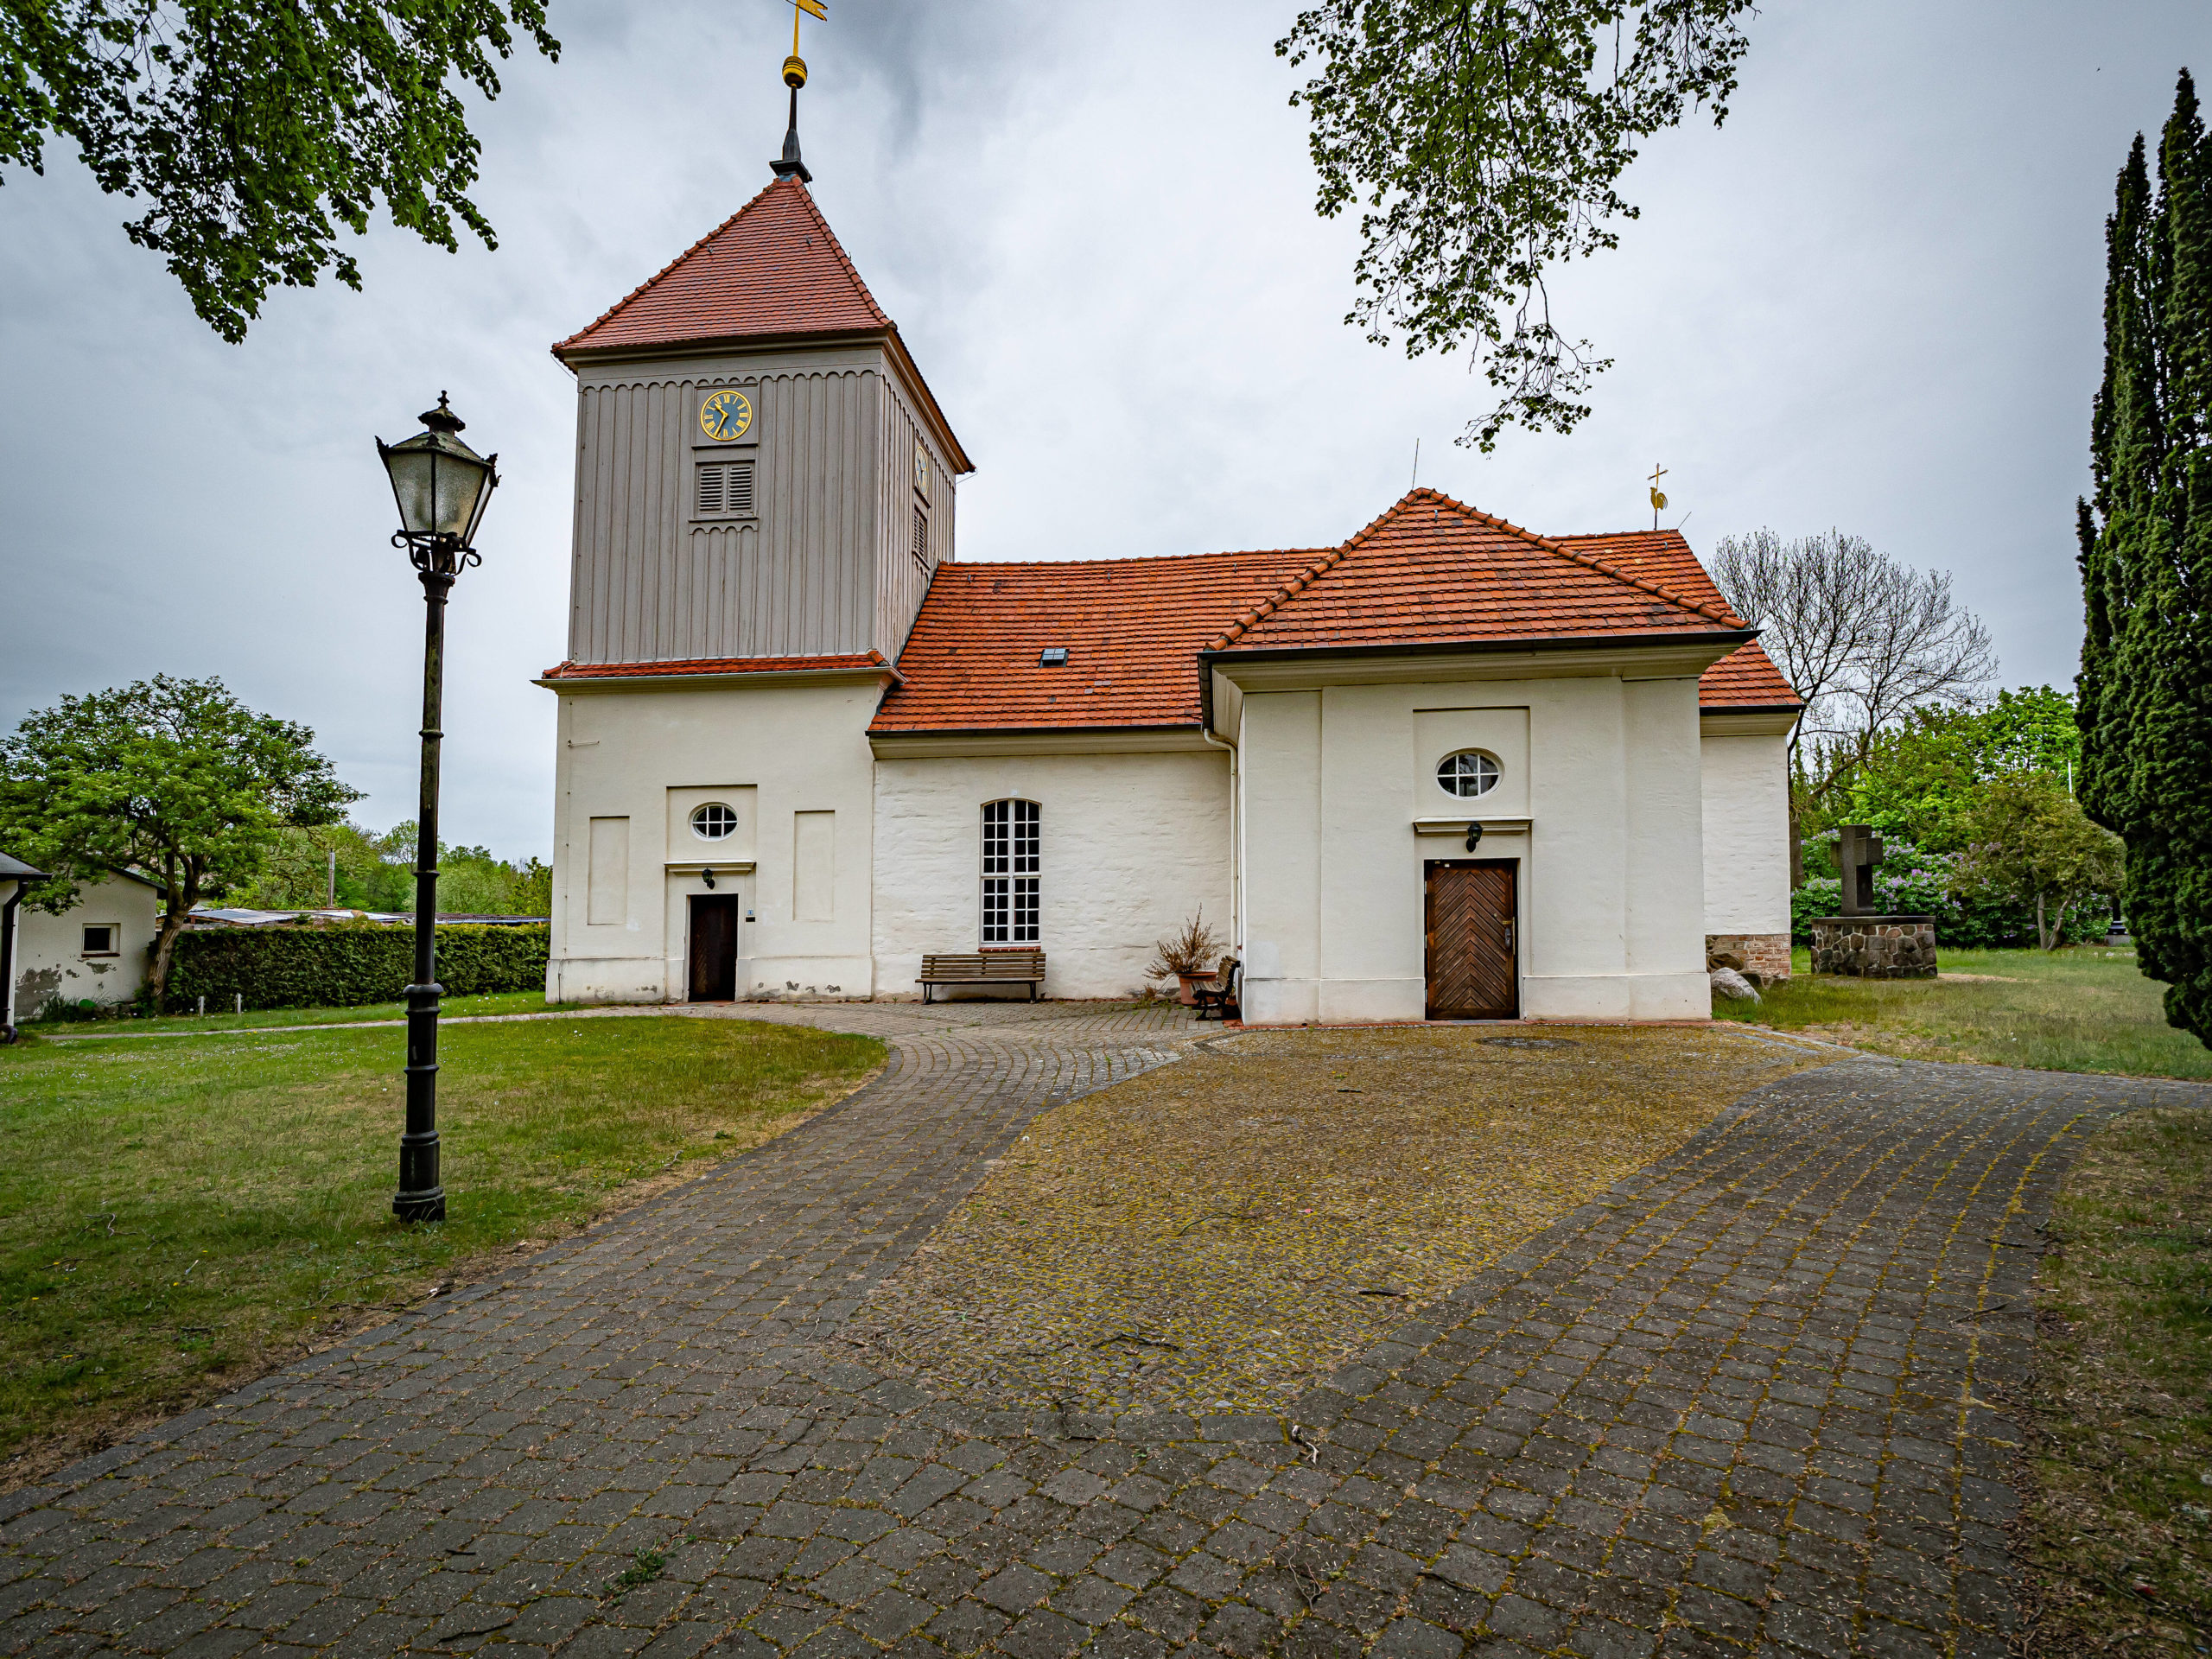 Abseits von Allem, im Spandauer Ortsteil Staaten findet sich die charmante Dorfkirche. Foto: Imago/Jürgen Ritter